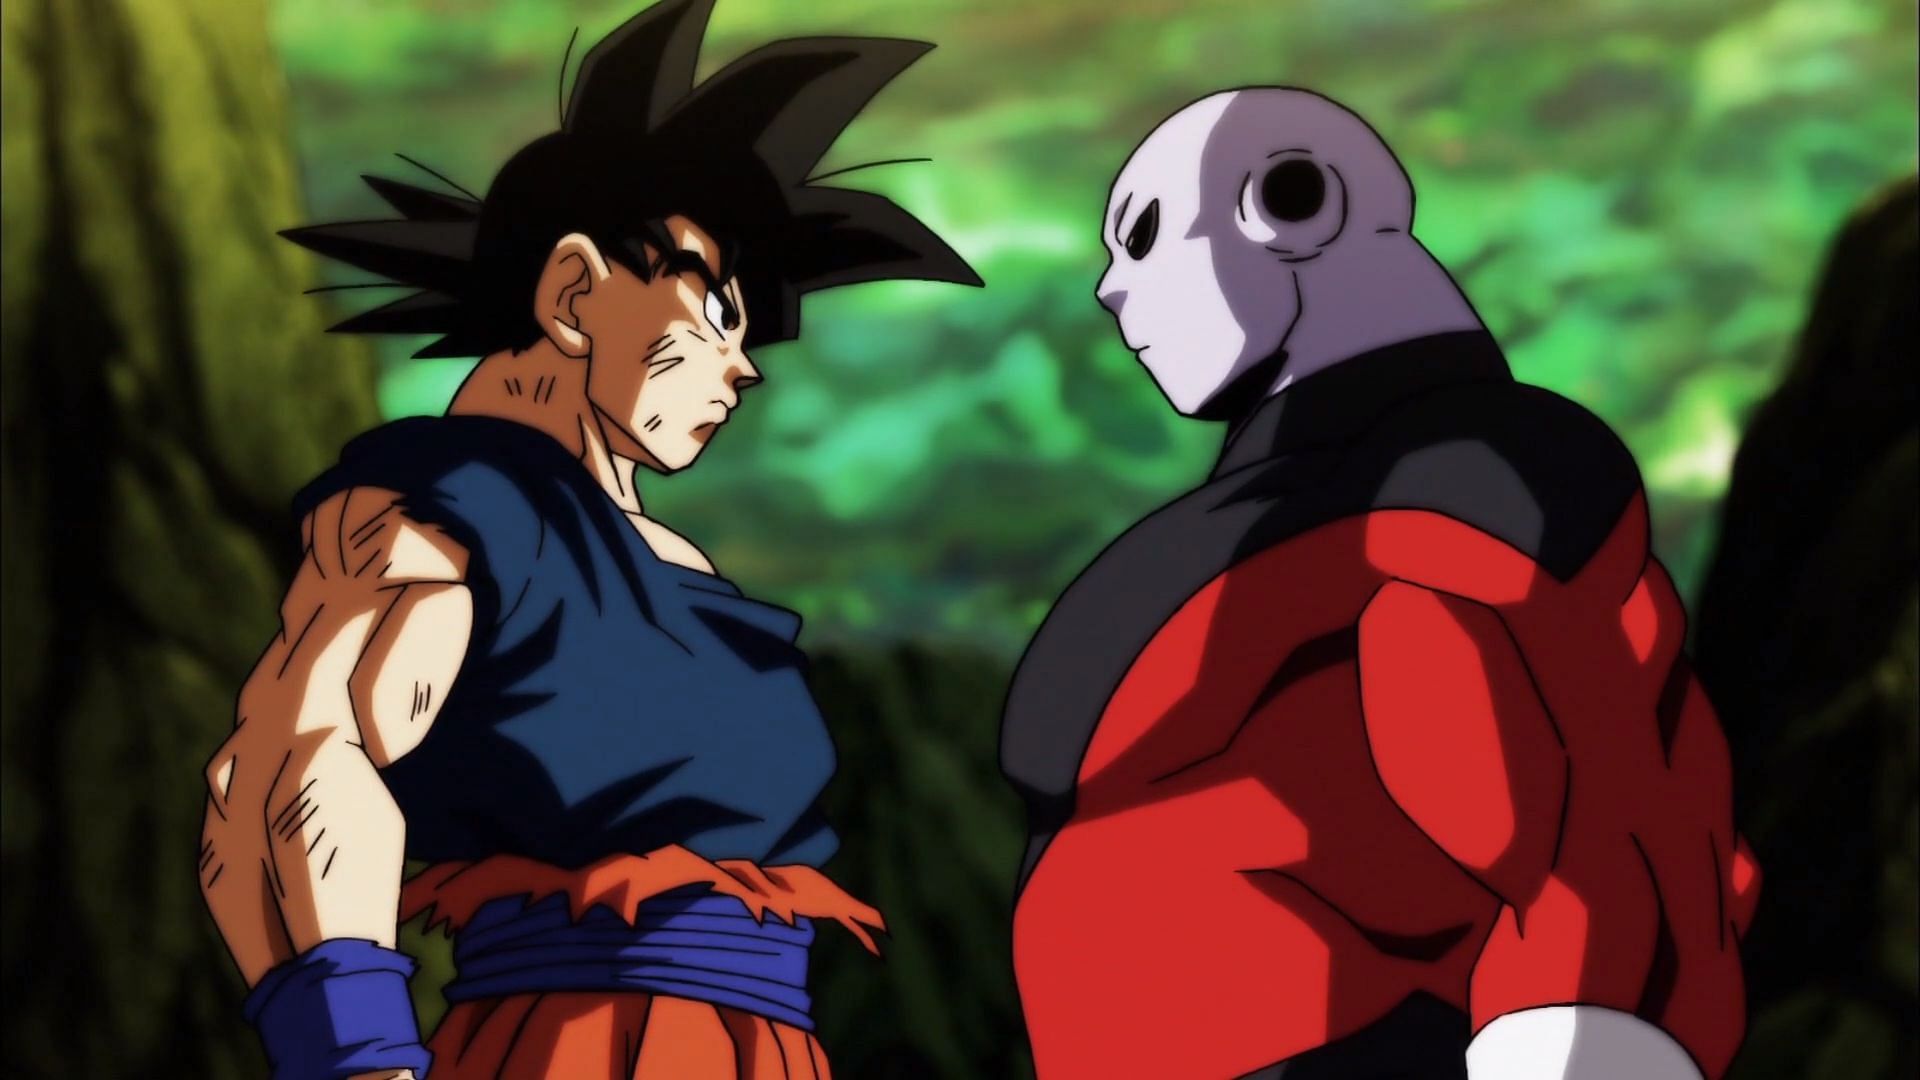 Goku and Jiren (Image via Toei Animation)